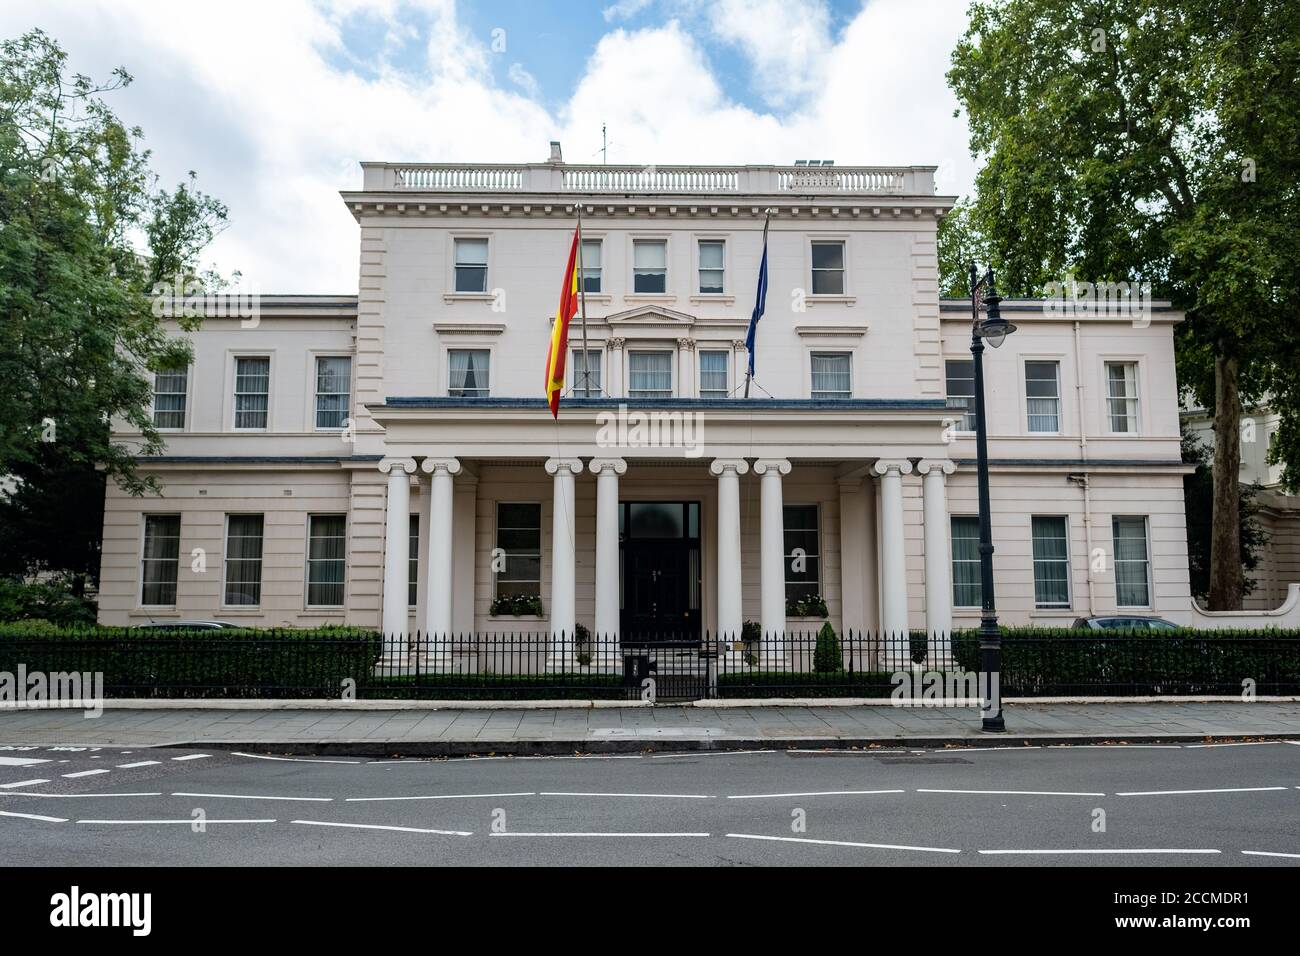 London- Spanish Embassy building on Belgrave Square in Belgravia Stock Photo